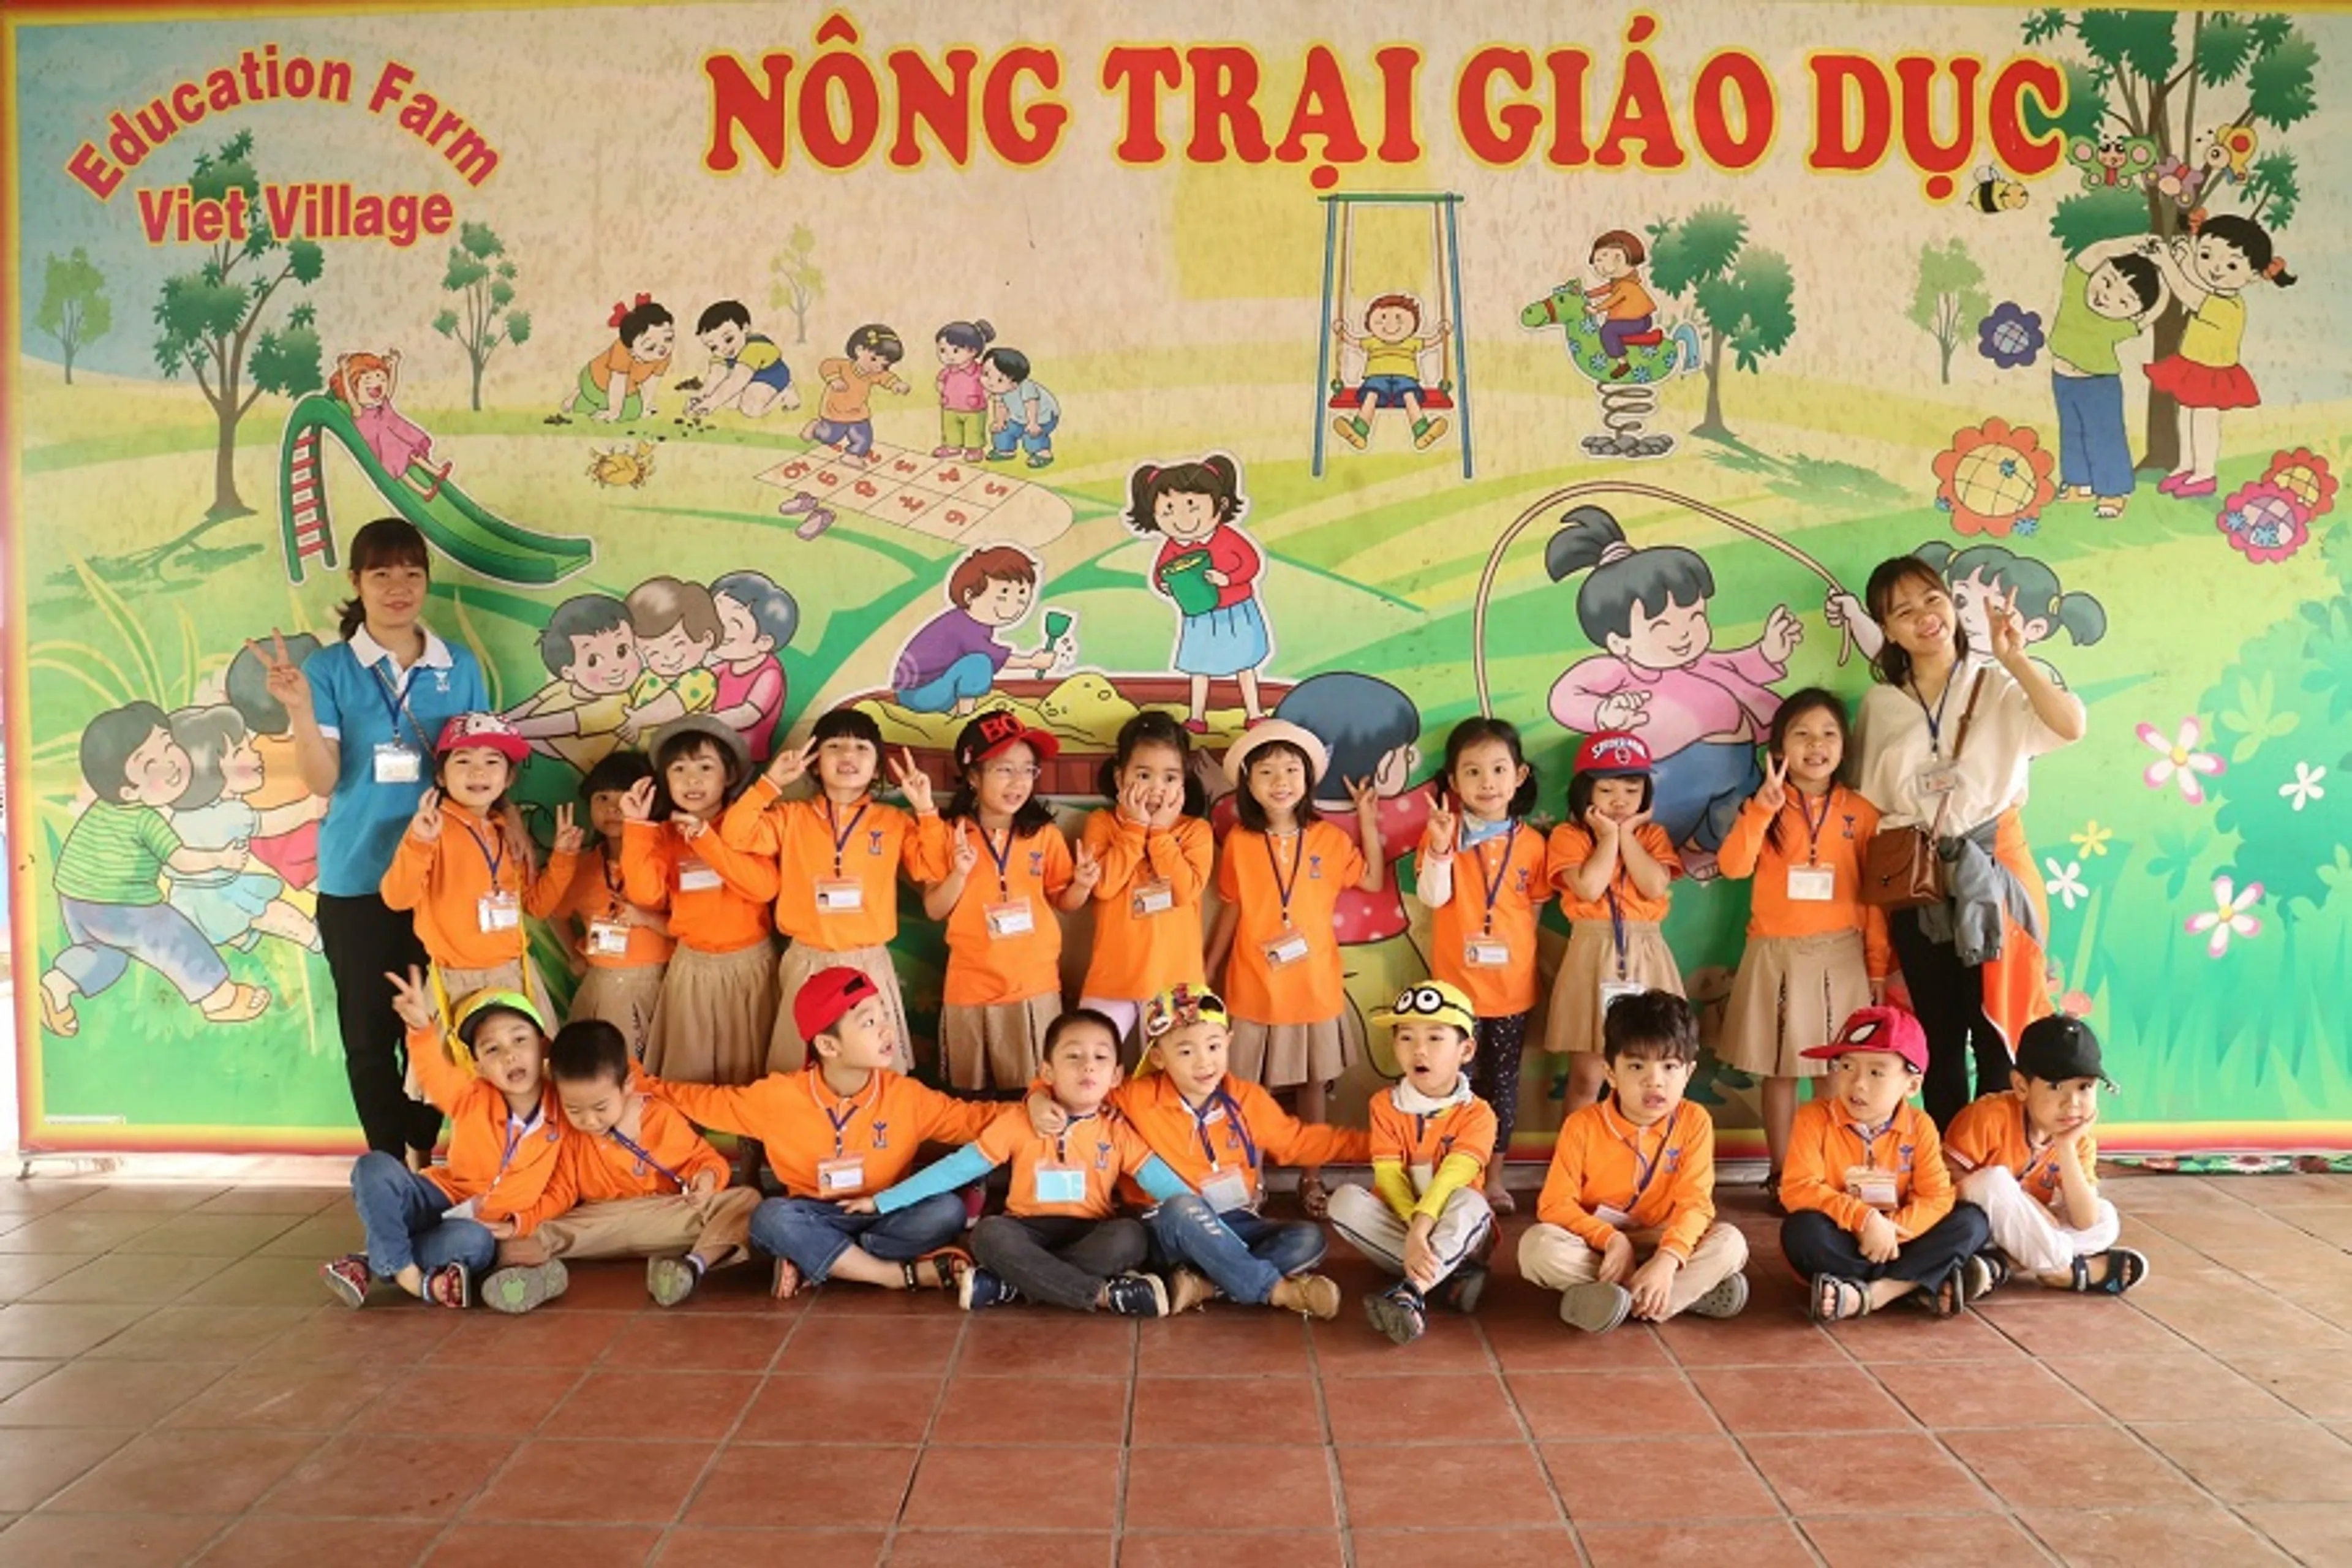 Tour khám phá Nông trại giáo dục làng quê Việt